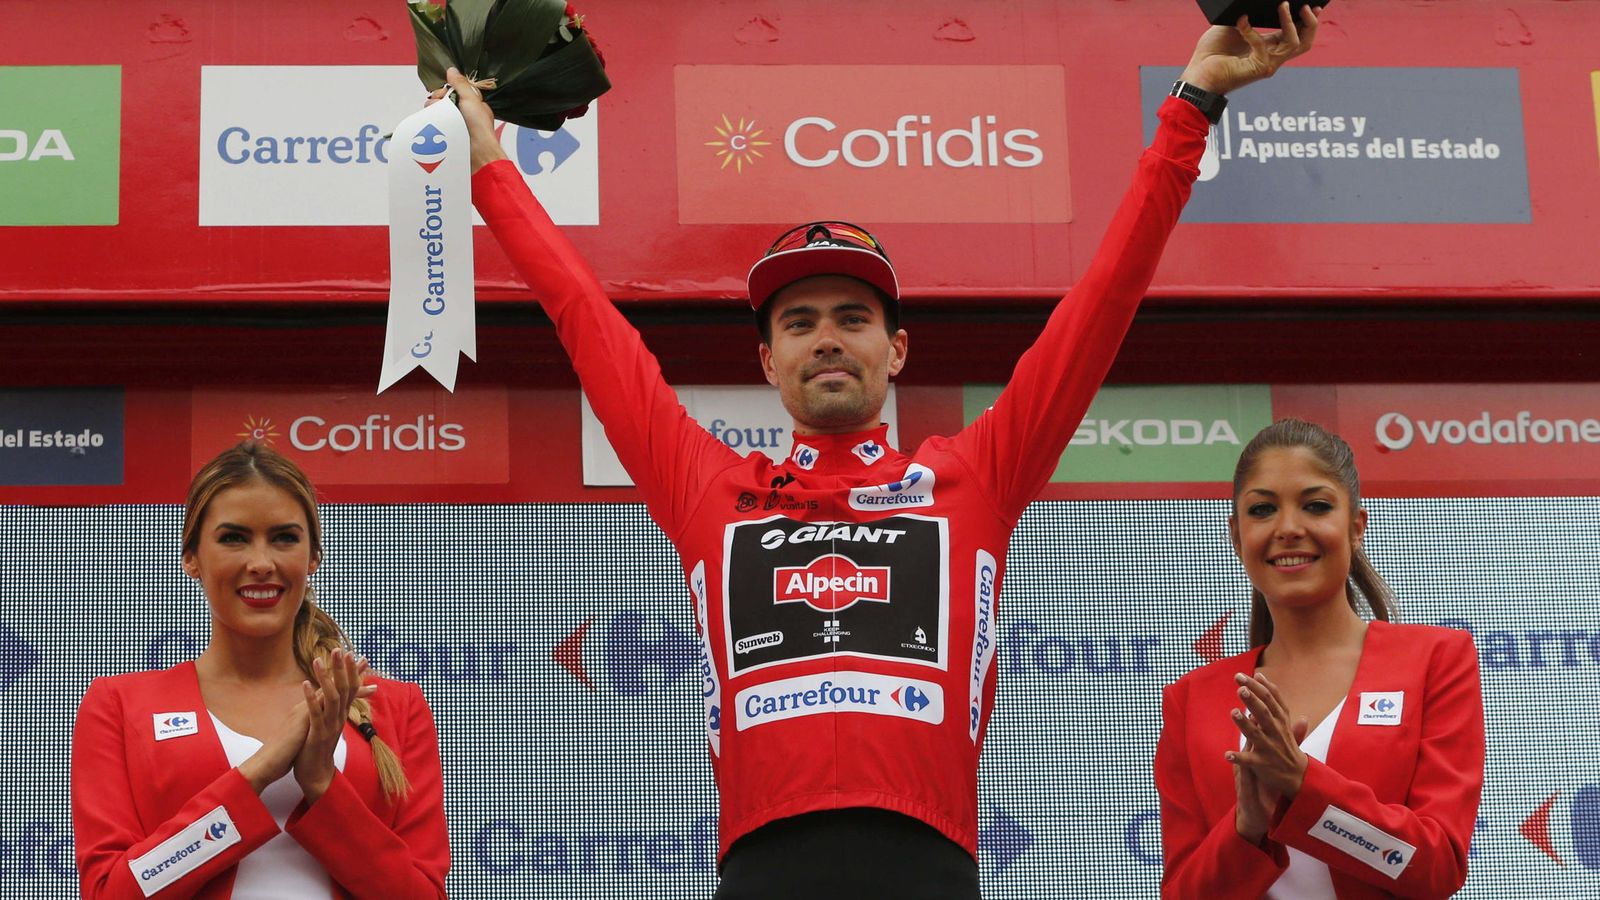 Foto: El ciclista holandés del equipo Giant, Tom Dumoulin, en el podio con el maillot rojo. (EFE)